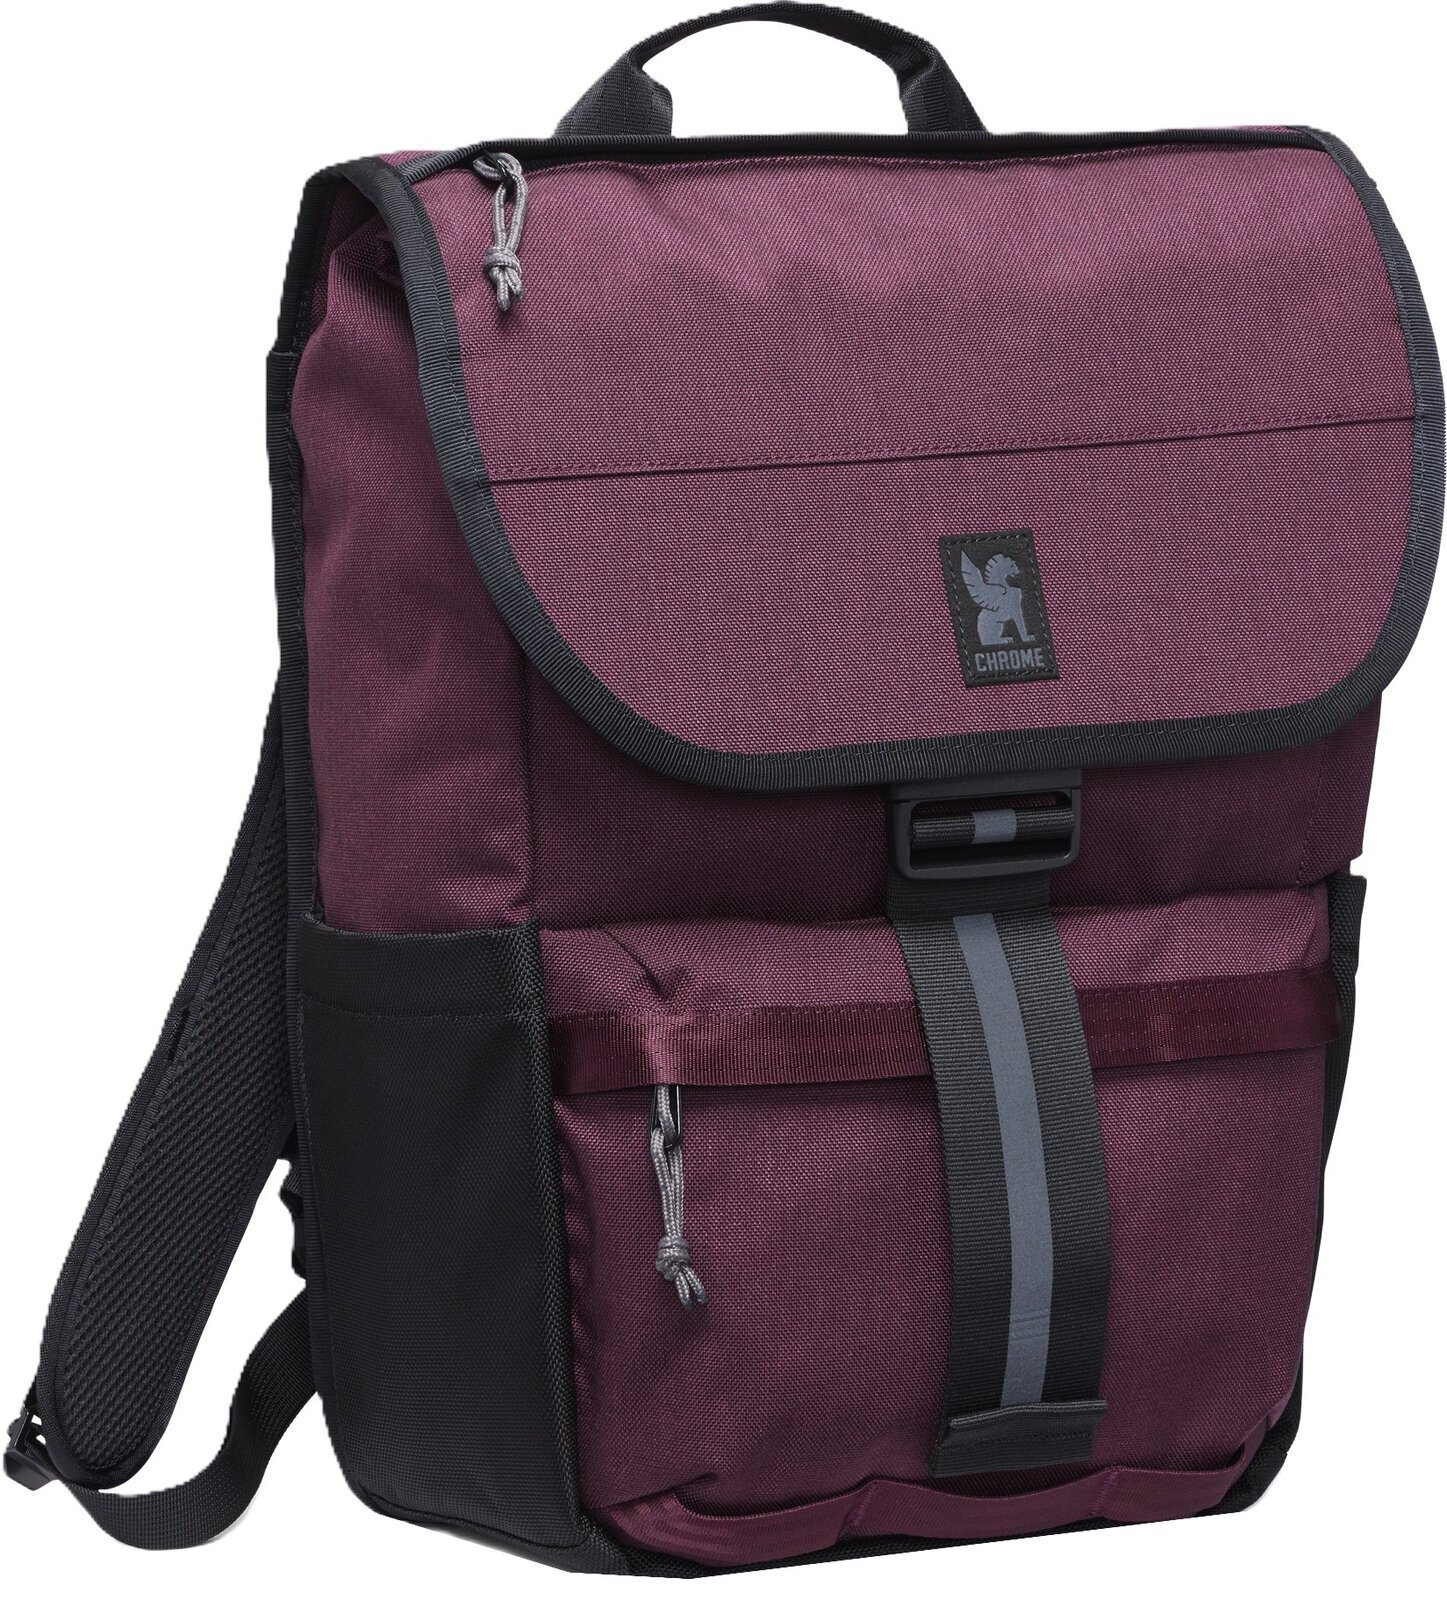 Lifestyle Rucksäck / Tasche Chrome Corbet Backpack Royale 24 L Rucksack